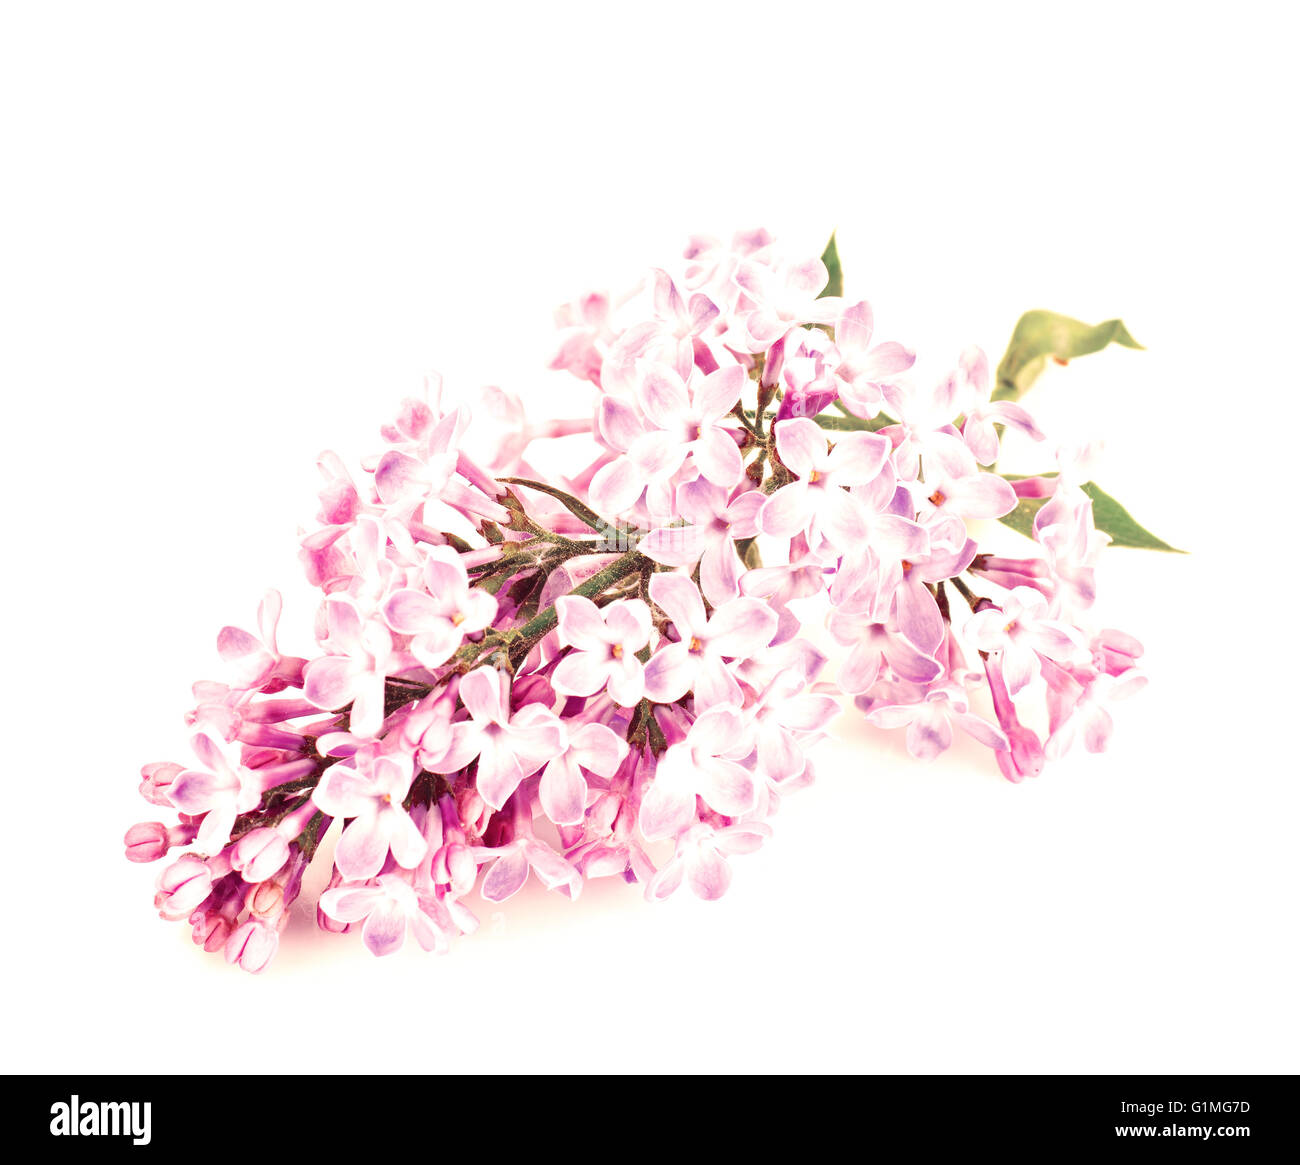 Primavera Flores Lila sobre un fondo blanco. Foto de stock